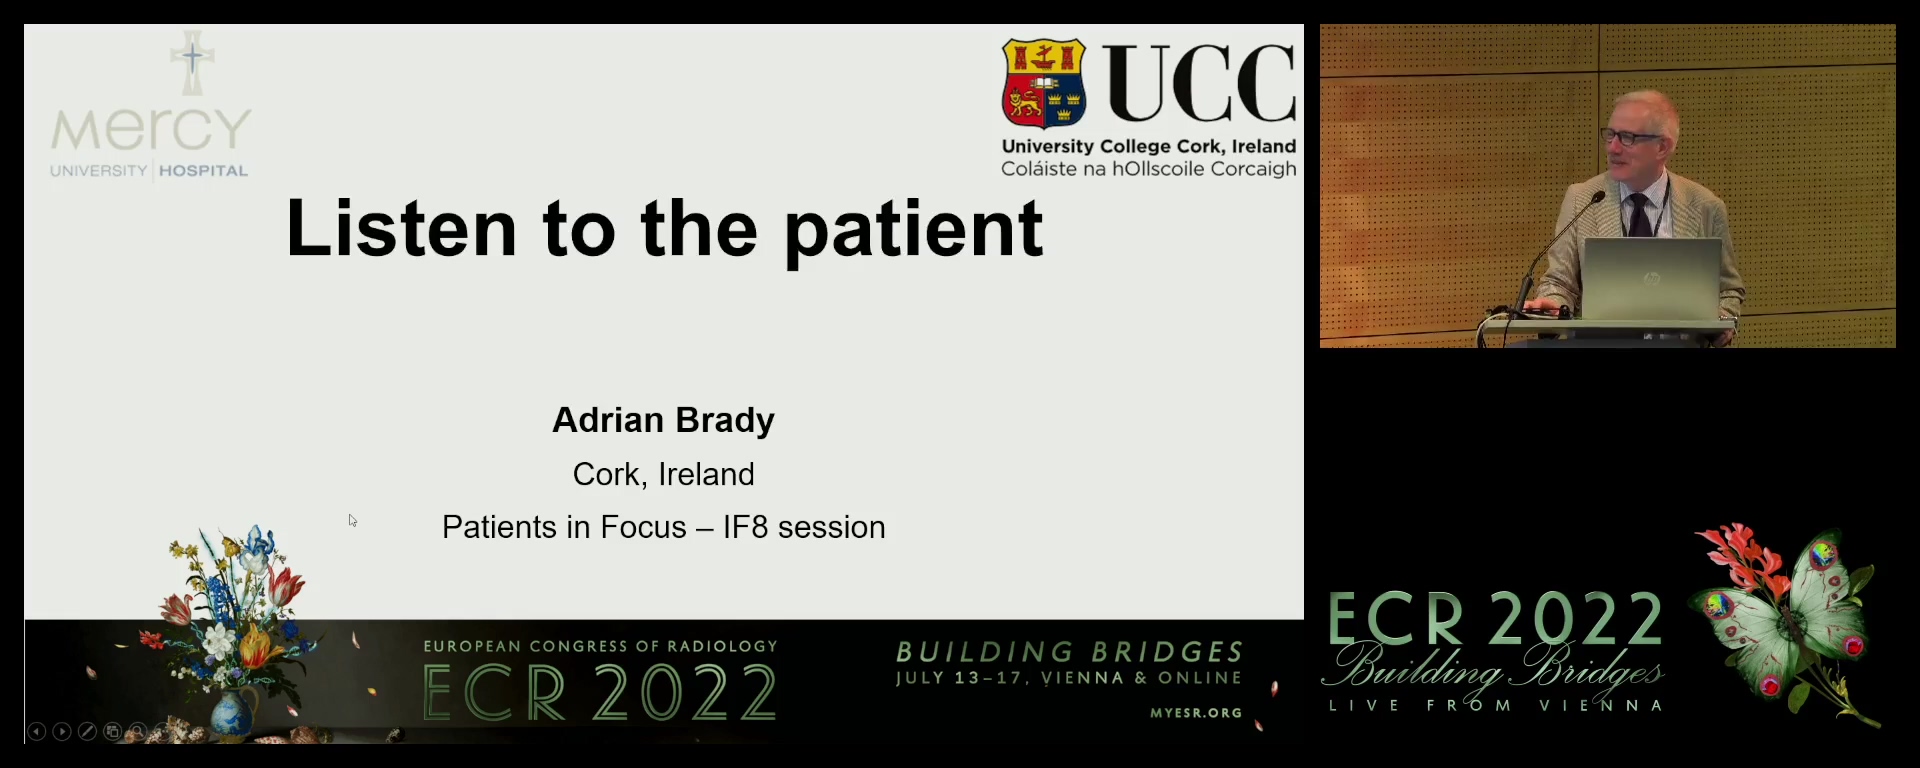 A case study in Mercy University Hospital, Cork, Ireland - Adrian Brady, Cork / IE